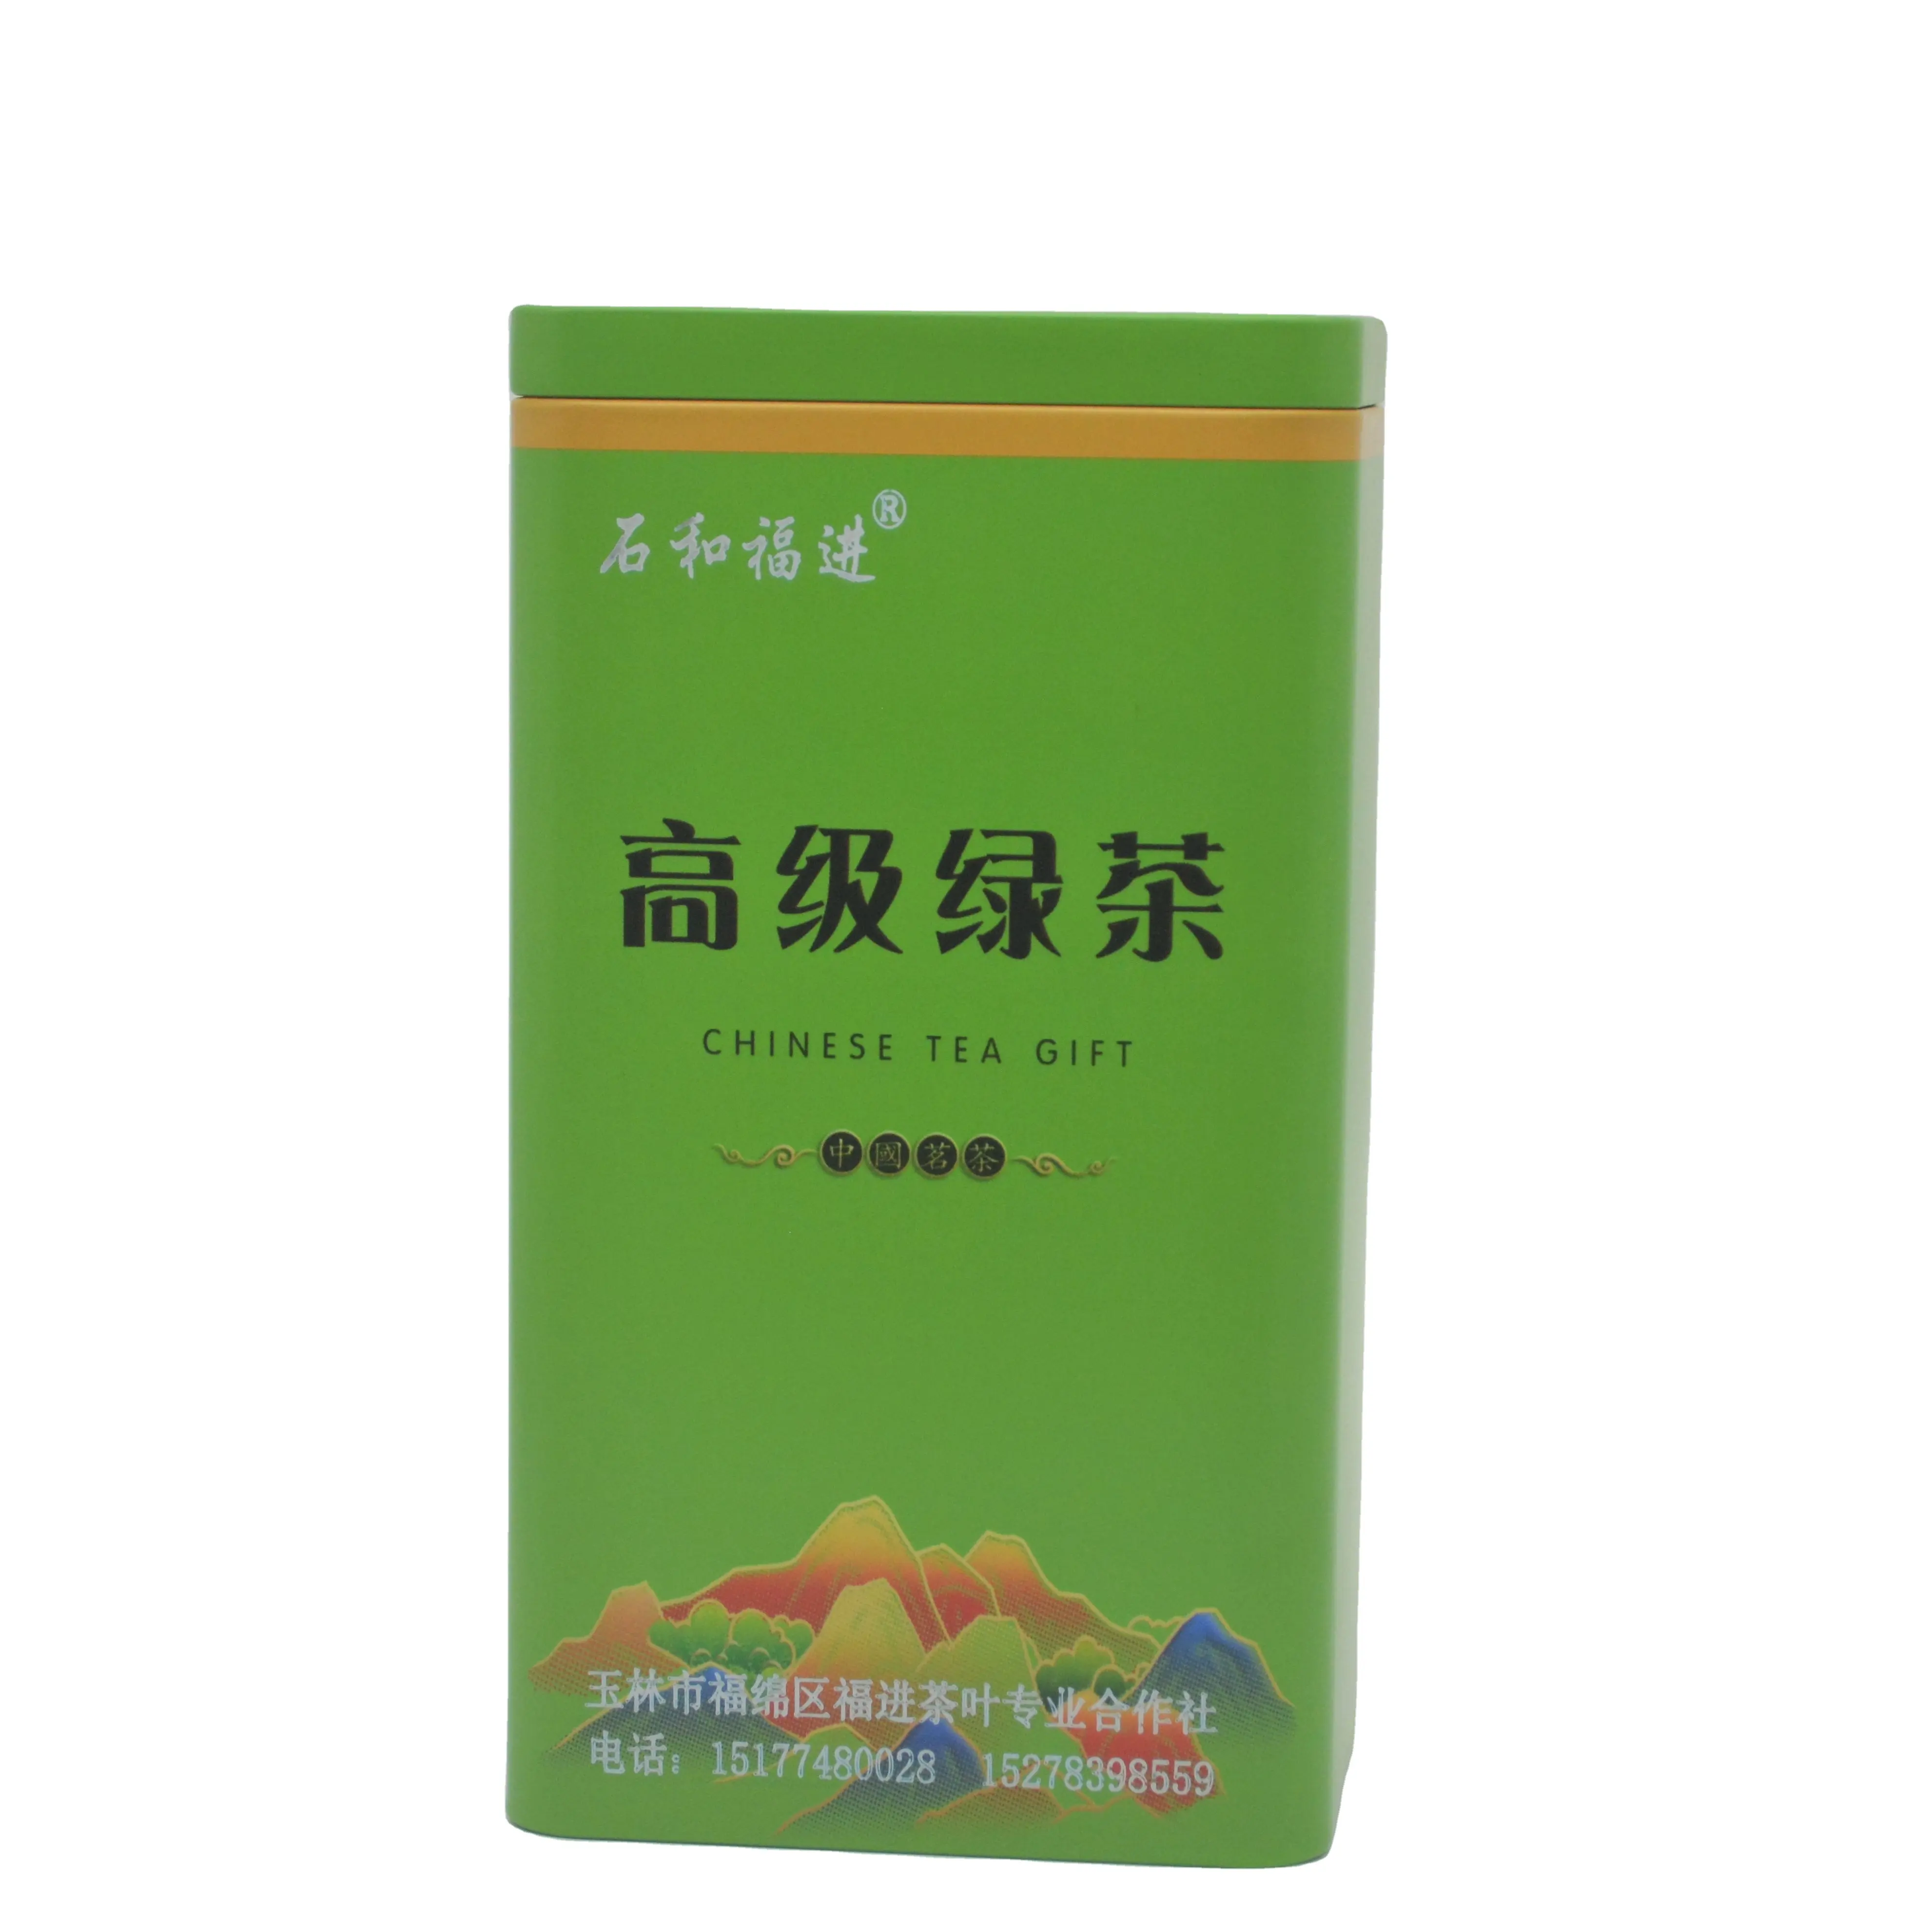 Hot Koop Beste Kwaliteit Chinese Groene Theezakjes Gewichtsverlies Biologische Premium Groene Thee